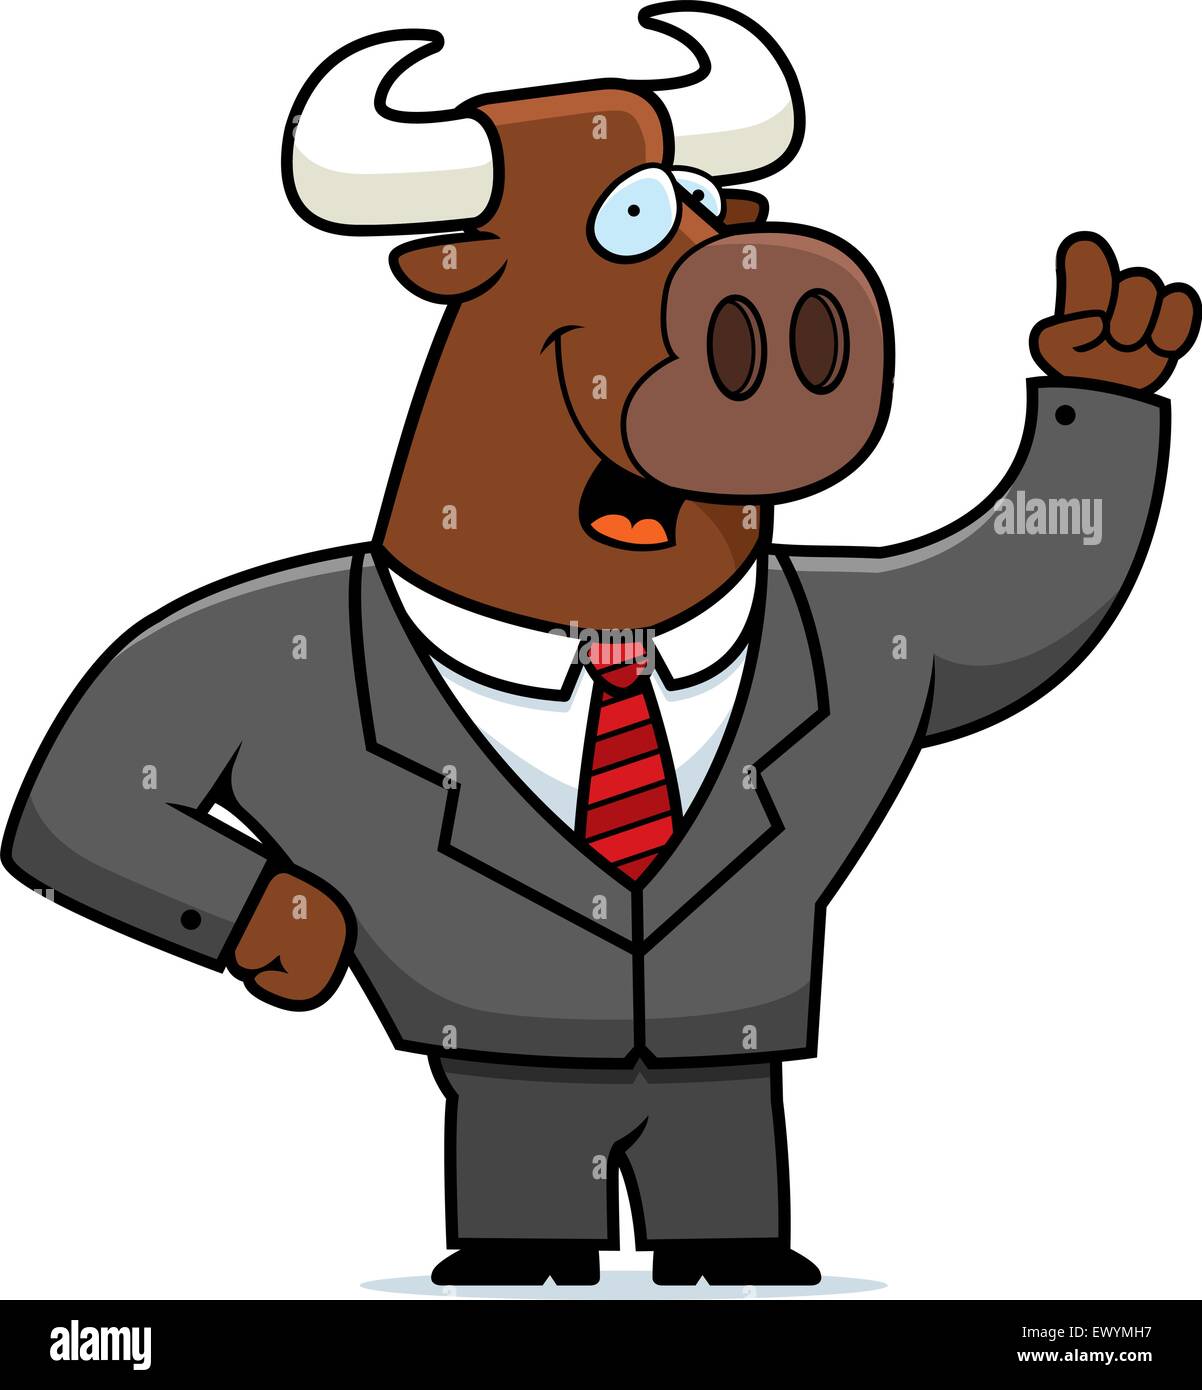 A happy cartoon bull businessman with an idea. Stock Vector